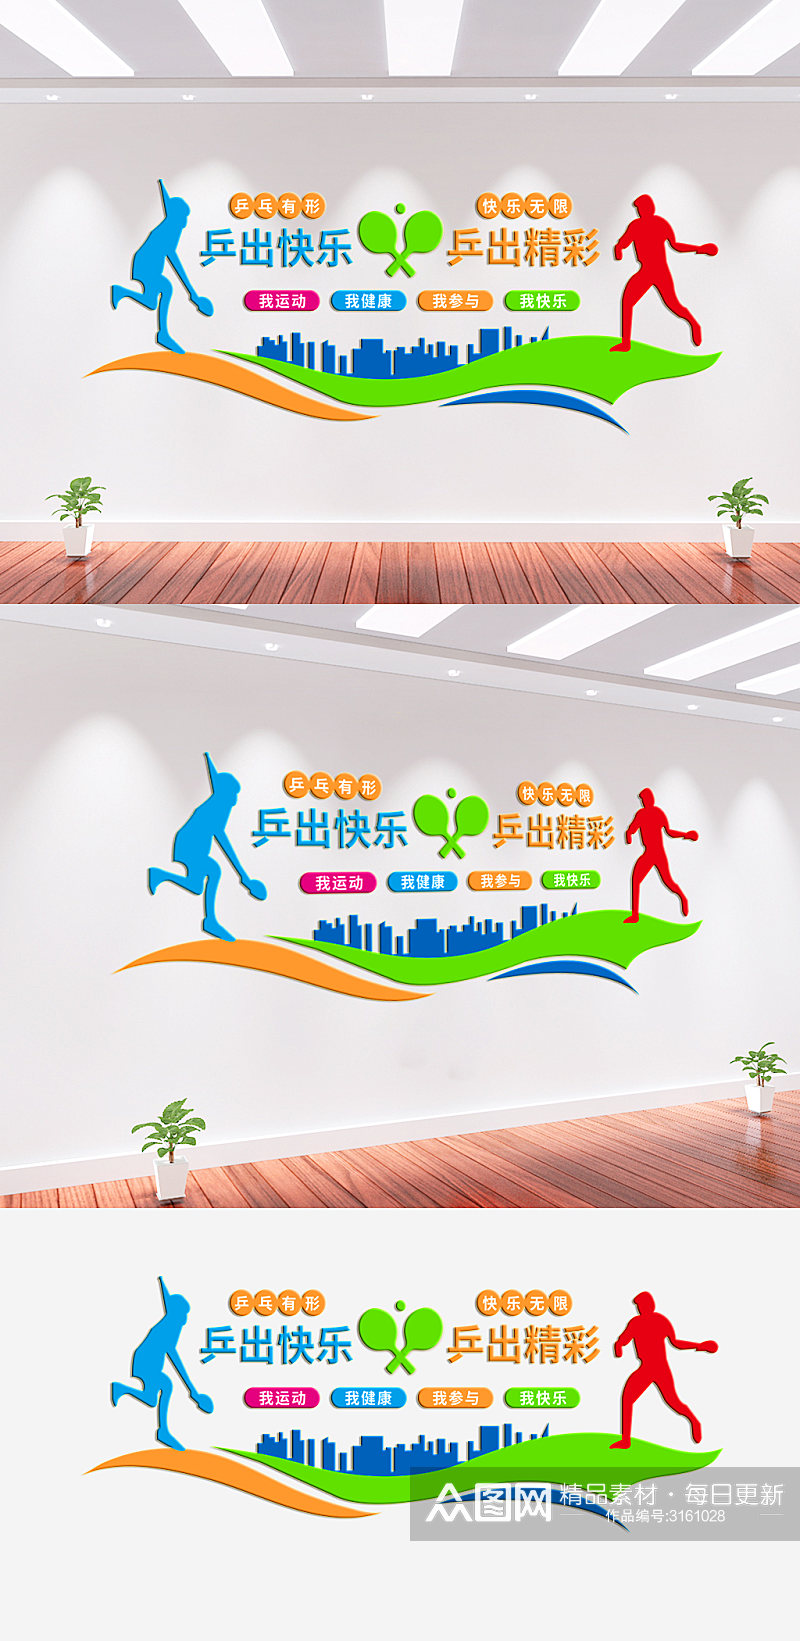 乒乓球体育运动文化墙素材